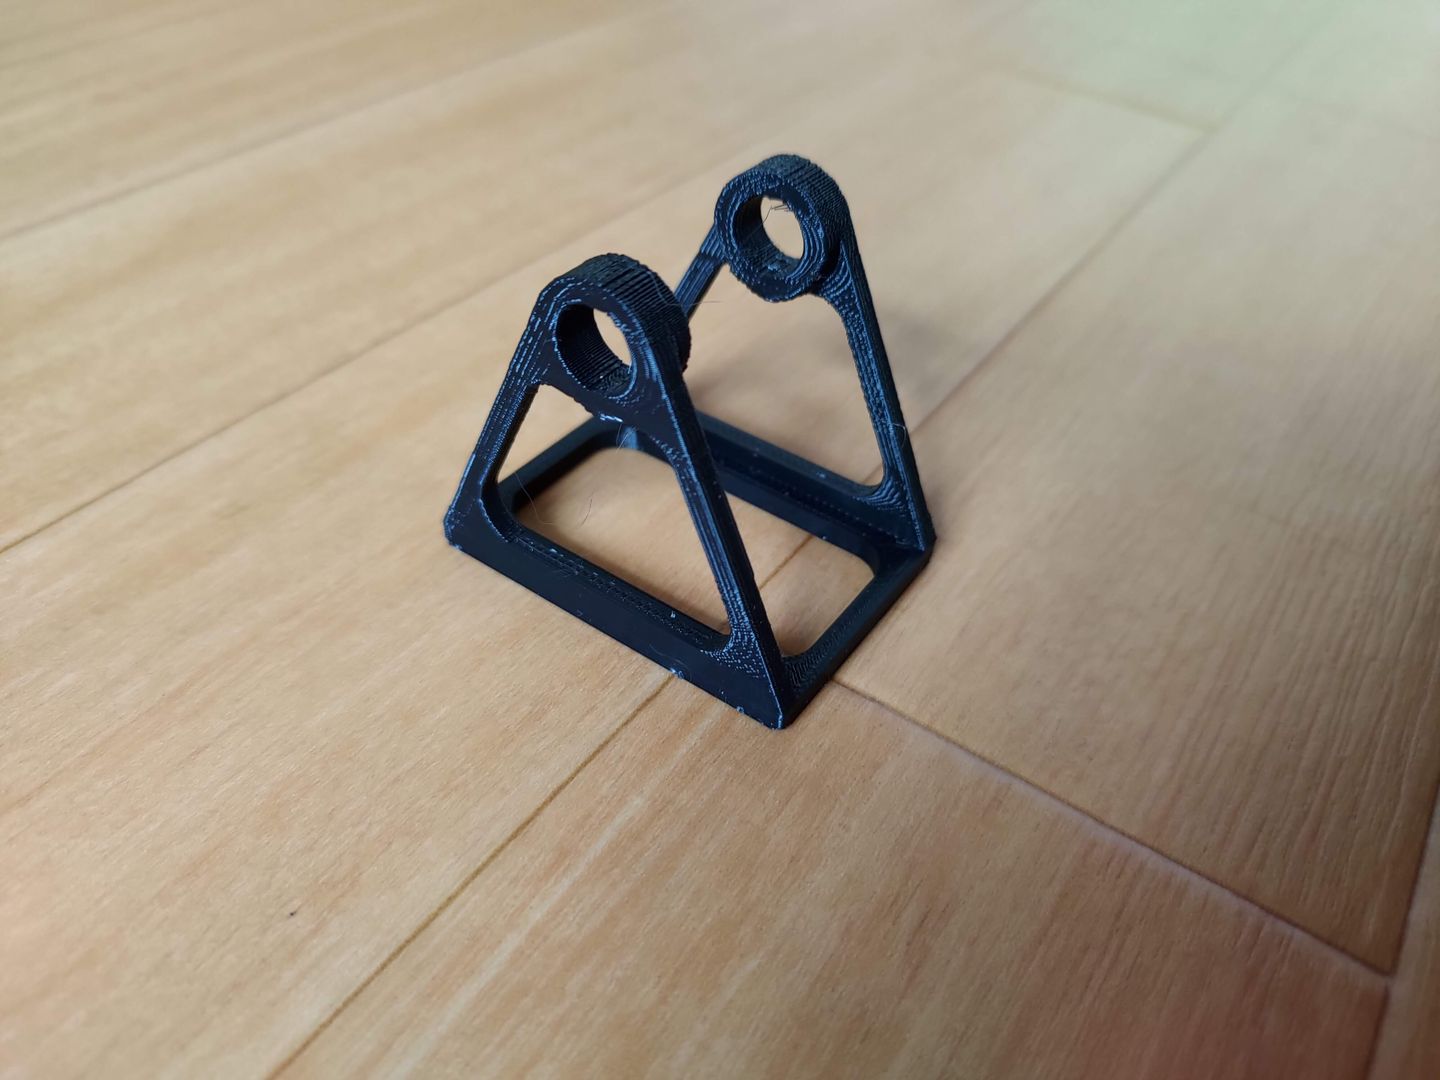 3D printed solder spool holder thumbnail